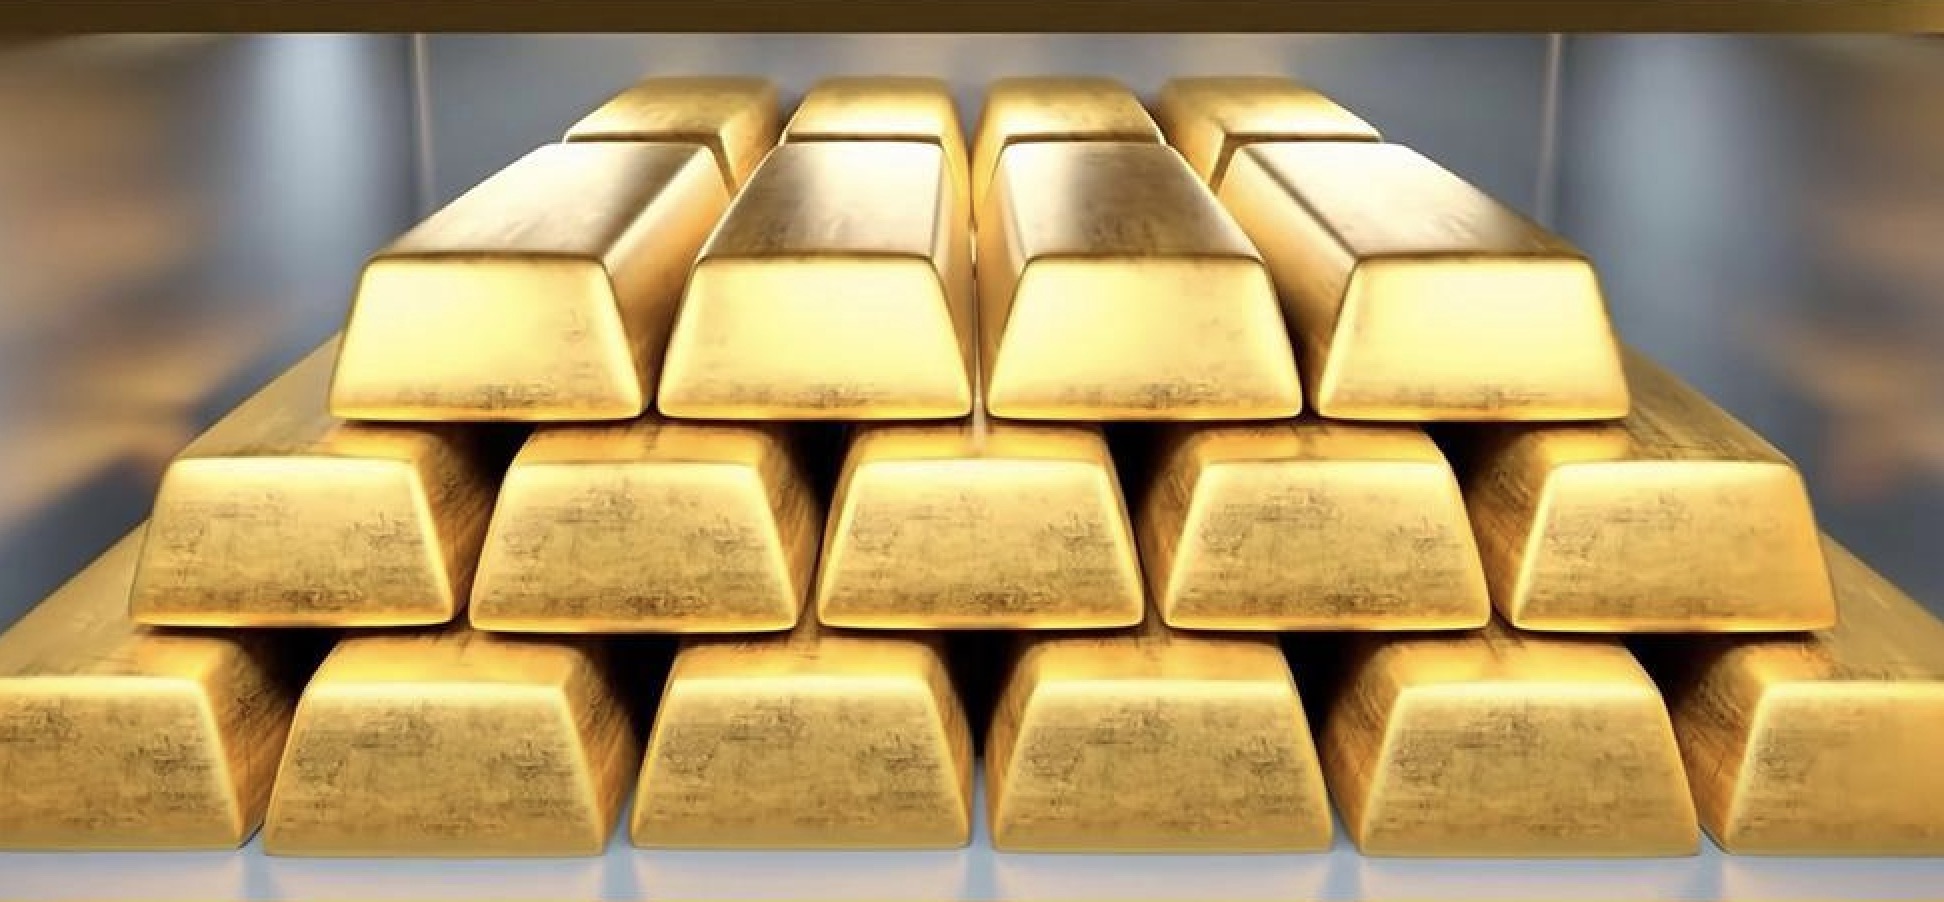 Pengingat perdagangan emas: Industri jasa AS terus melemah, dan kenaikan "memainkan lagu kemenangan" mencapai angka 2300